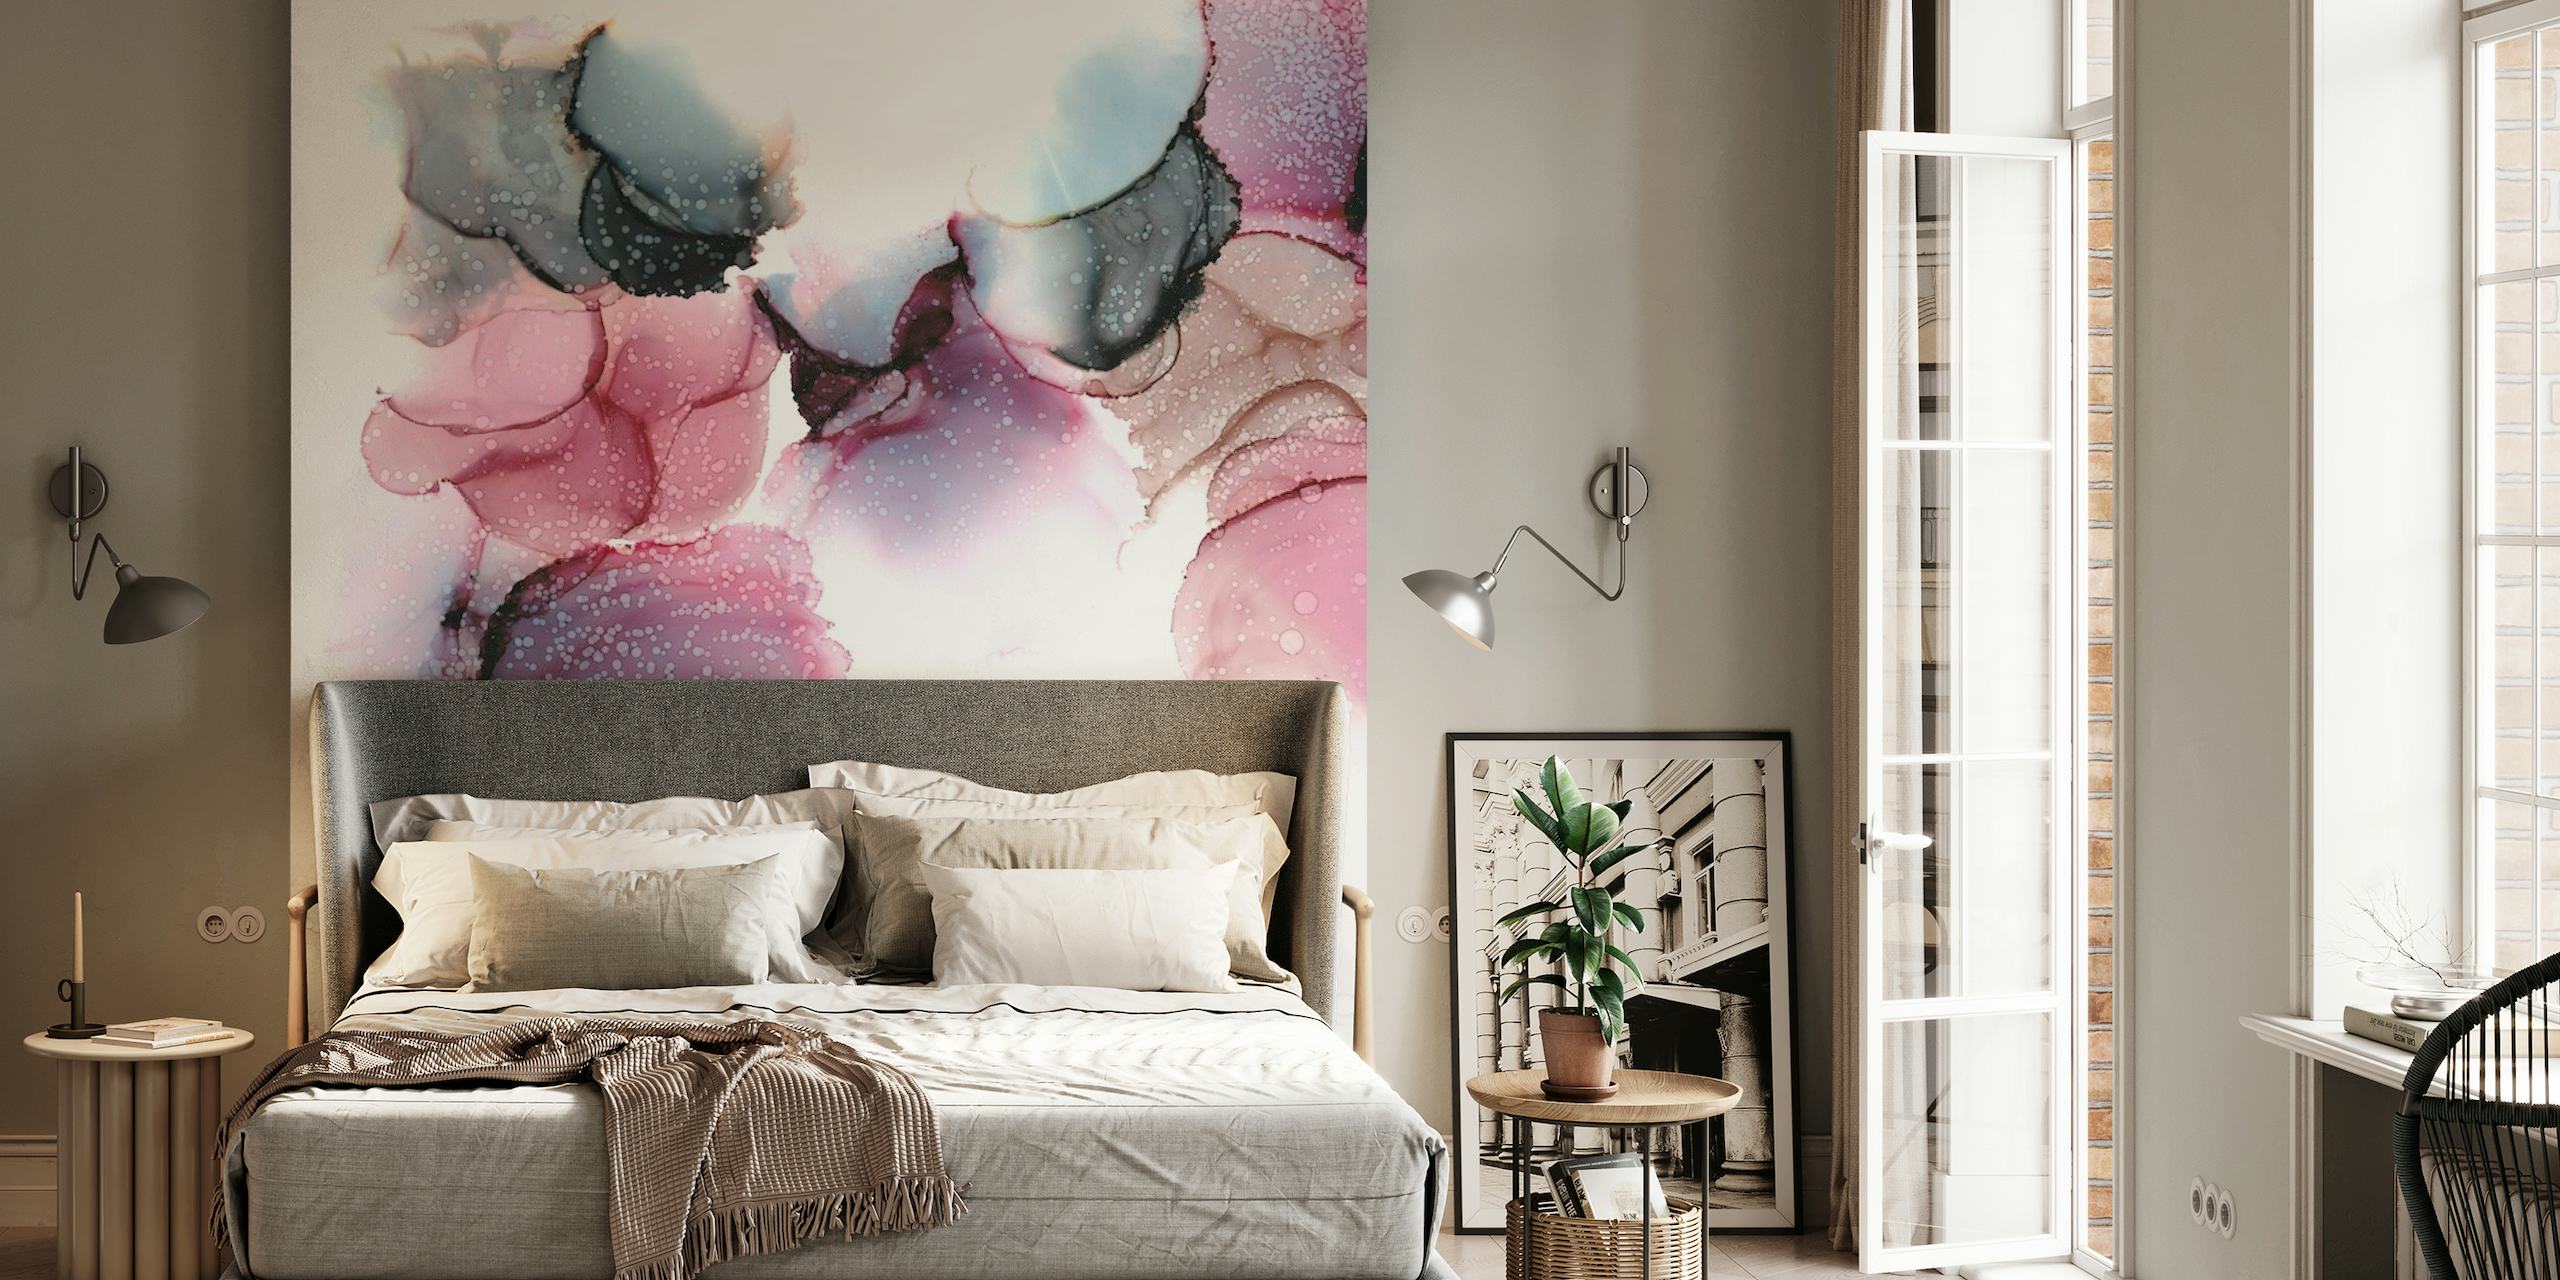 Abstract fotobehang met bellentent met zachtroze en grijze aquarelvlekken